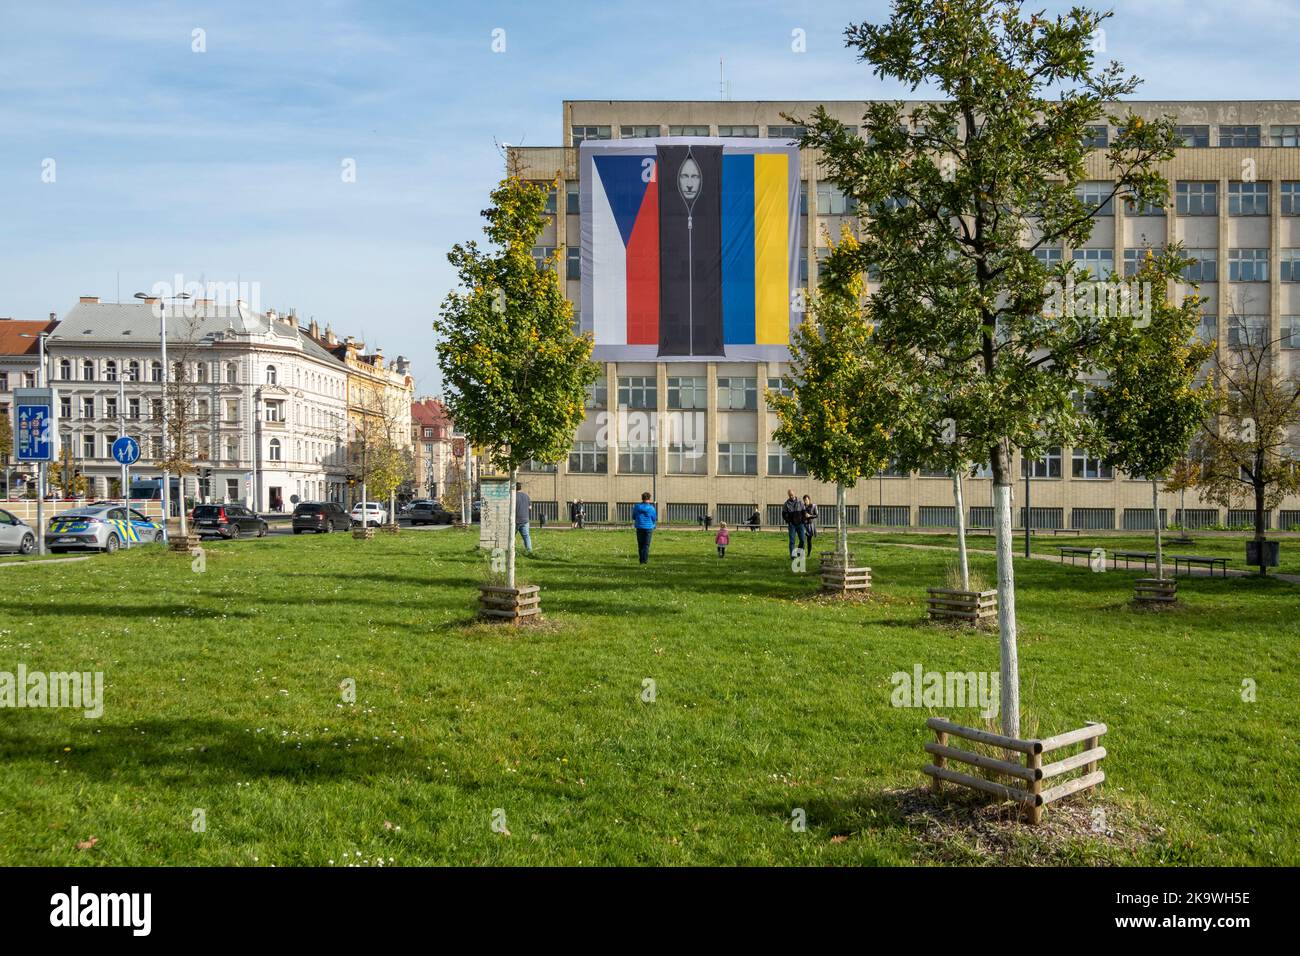 Edificio del Ministero dell'interno ceco con banner. il presidente russo, Vladimir Putin, in una borsa nera tra le bandiere della Repubblica ceca e dell'Ucraina. Foto Stock